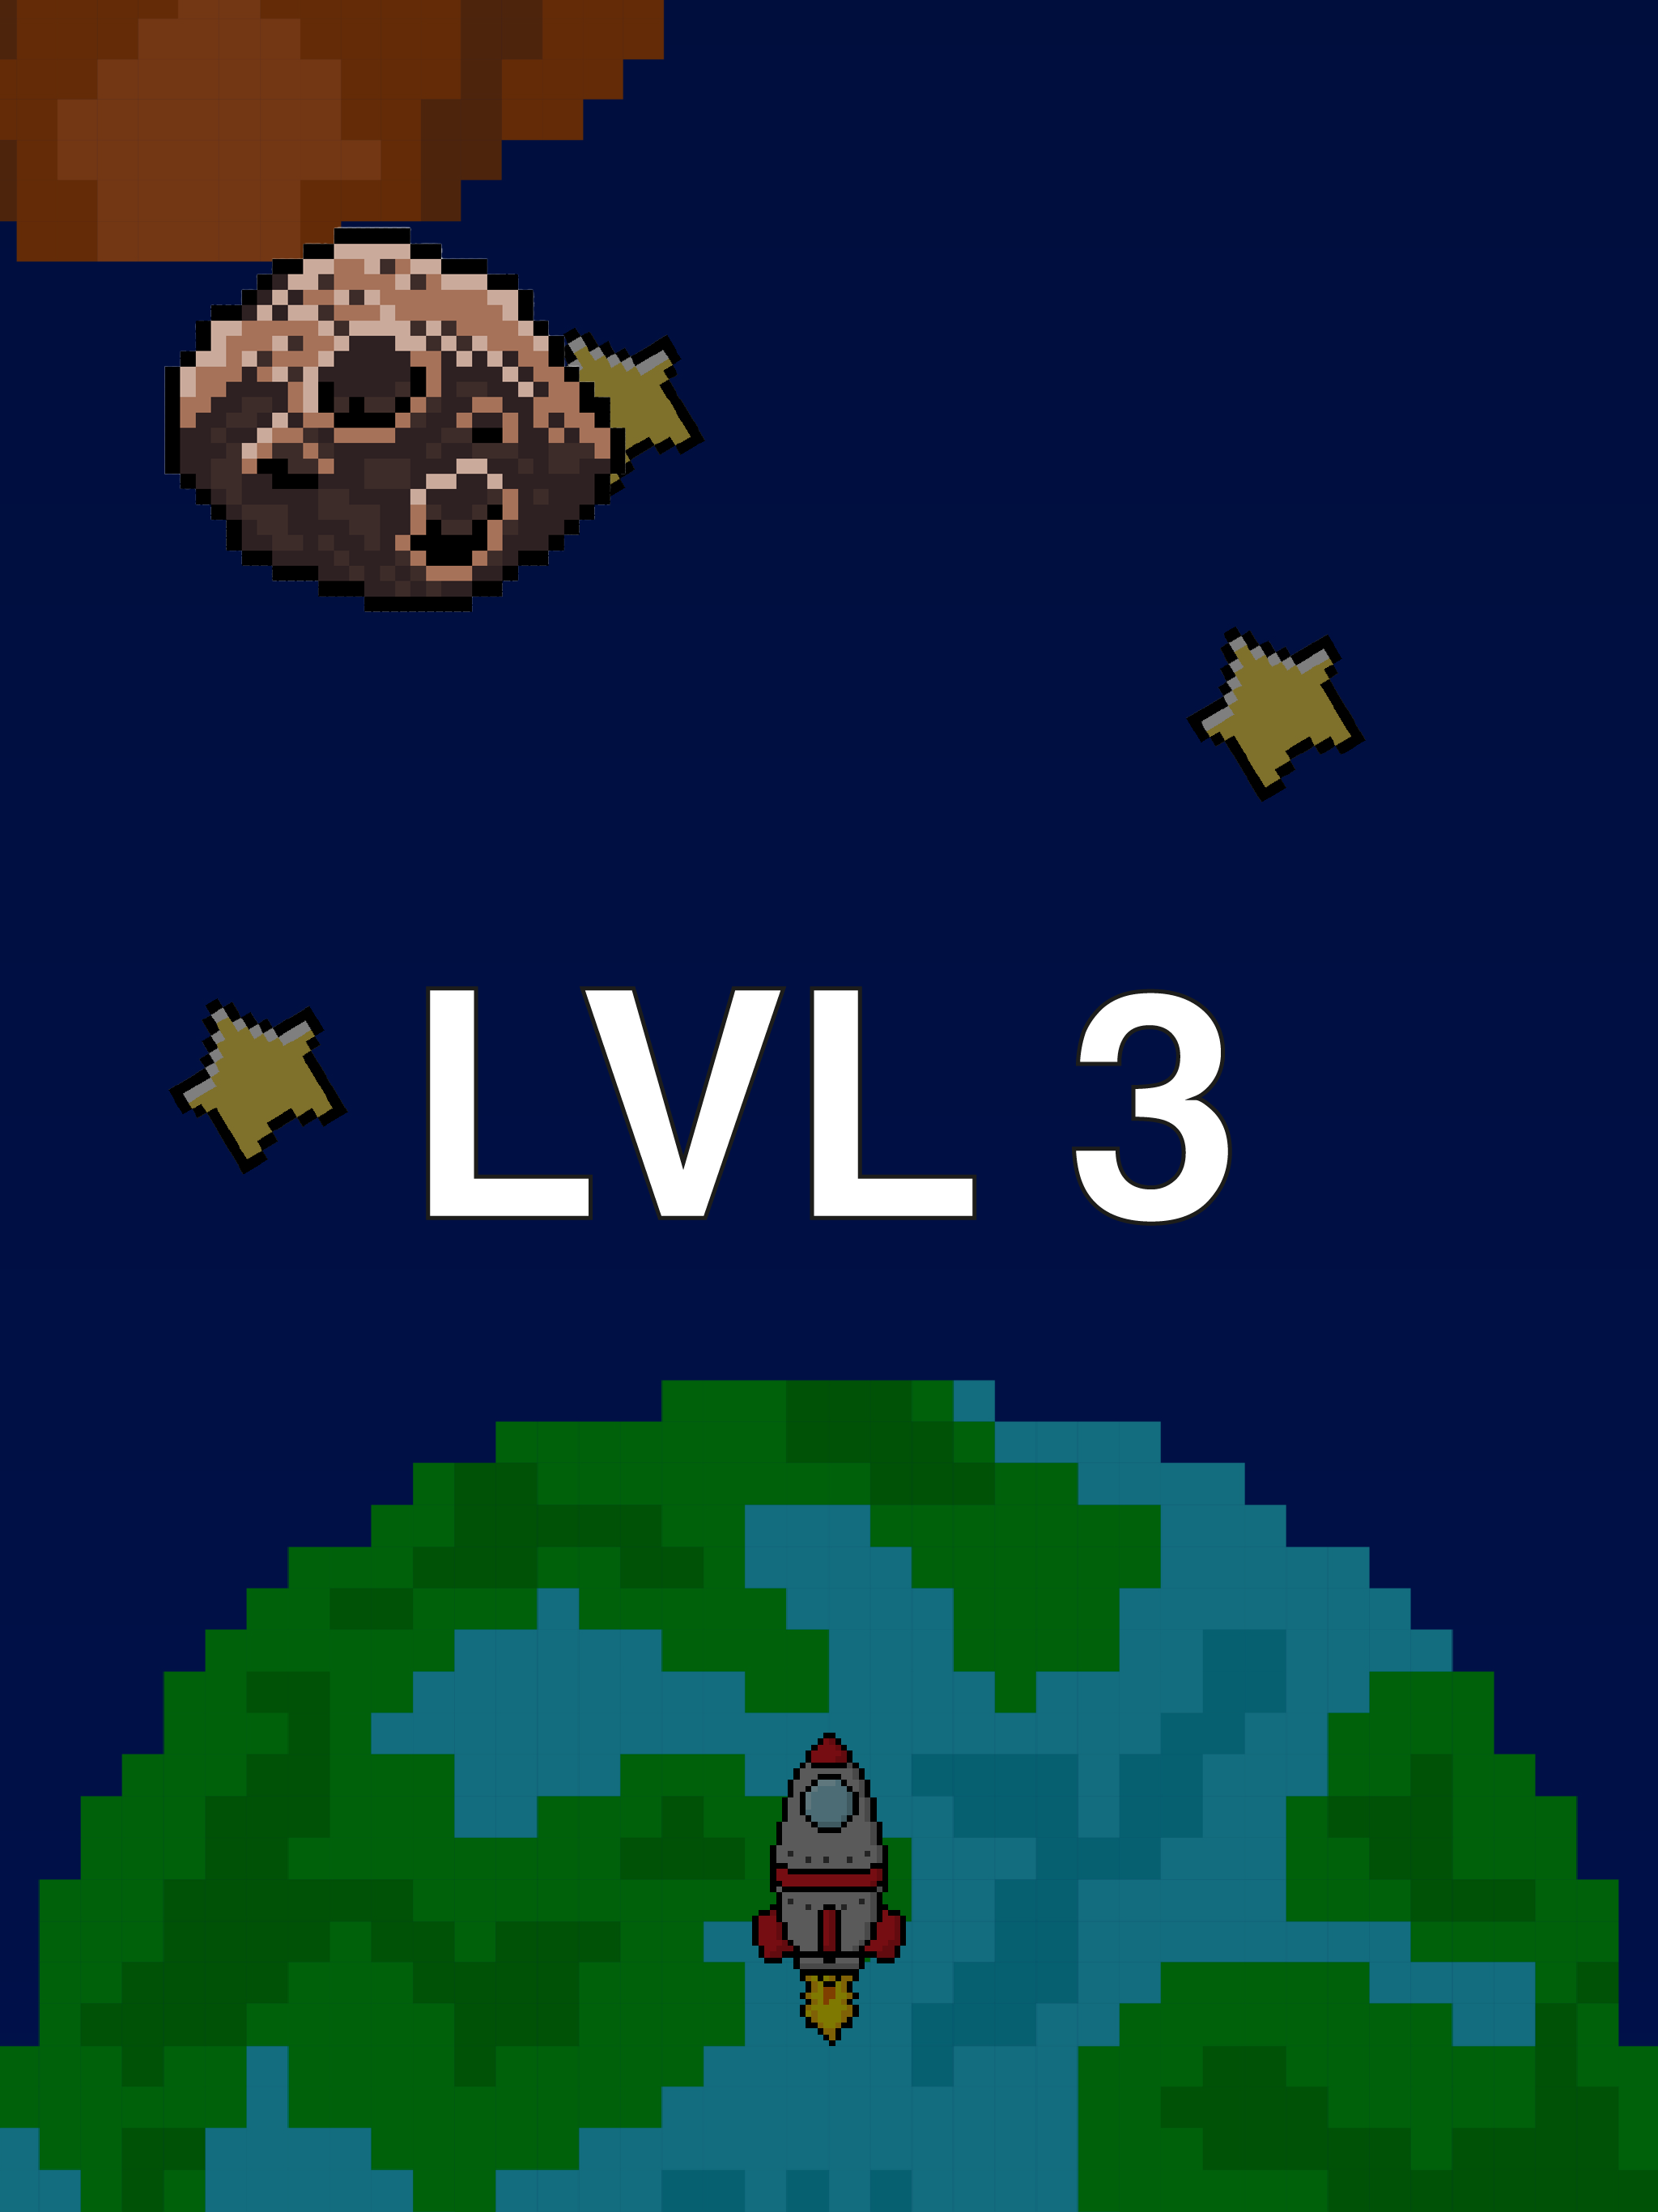 To The Moon screenshot game